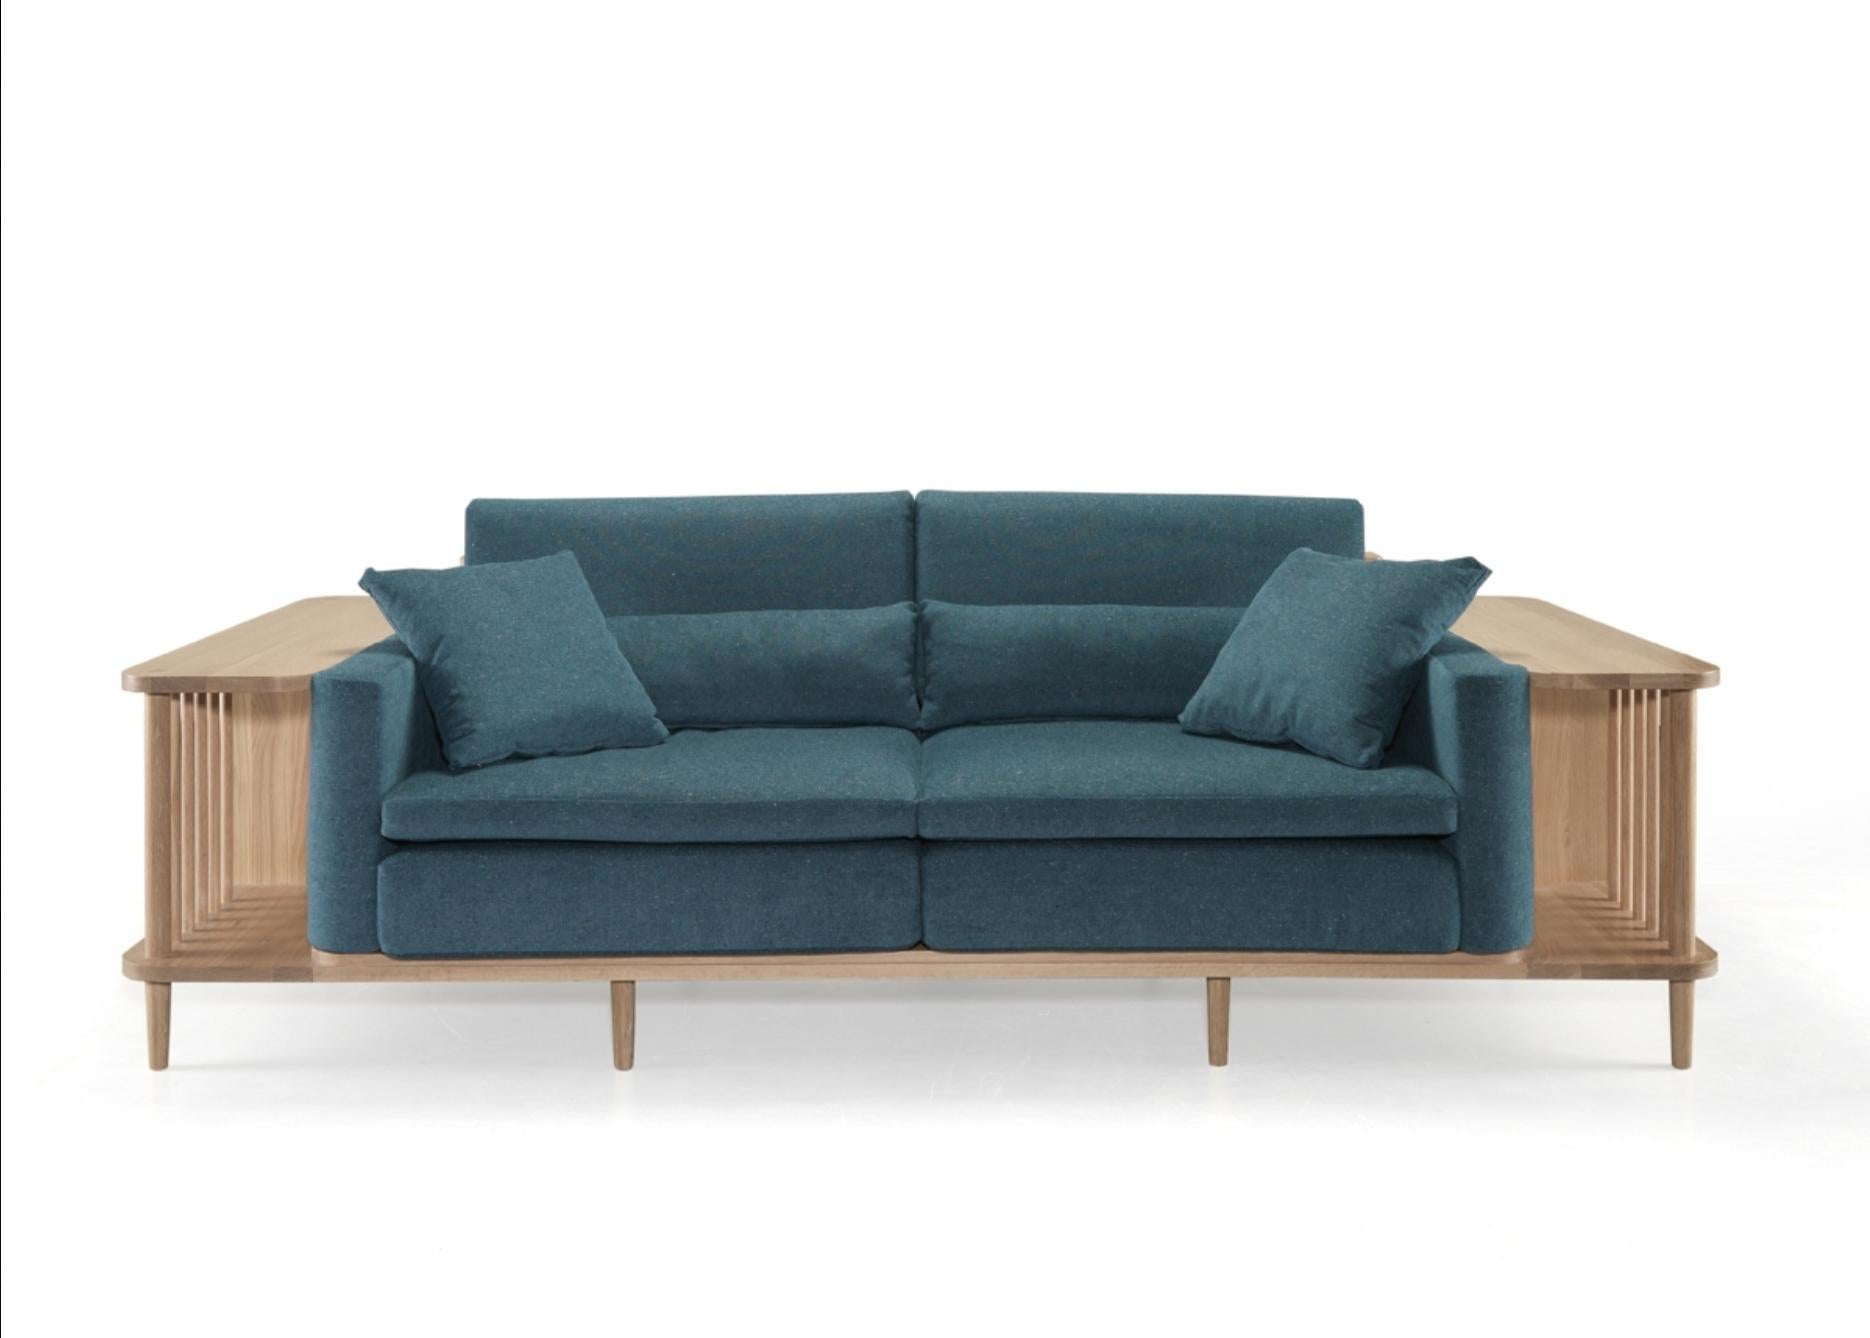 Grand canapé confortable du designer avec cadre en bois massif de la plus haute qualité. Un canapé, une bibliothèque et aussi un séparateur, parfaits pour un spac exclusif, spécialisé dans la conception, la fabrication et l'exportation de meubles en